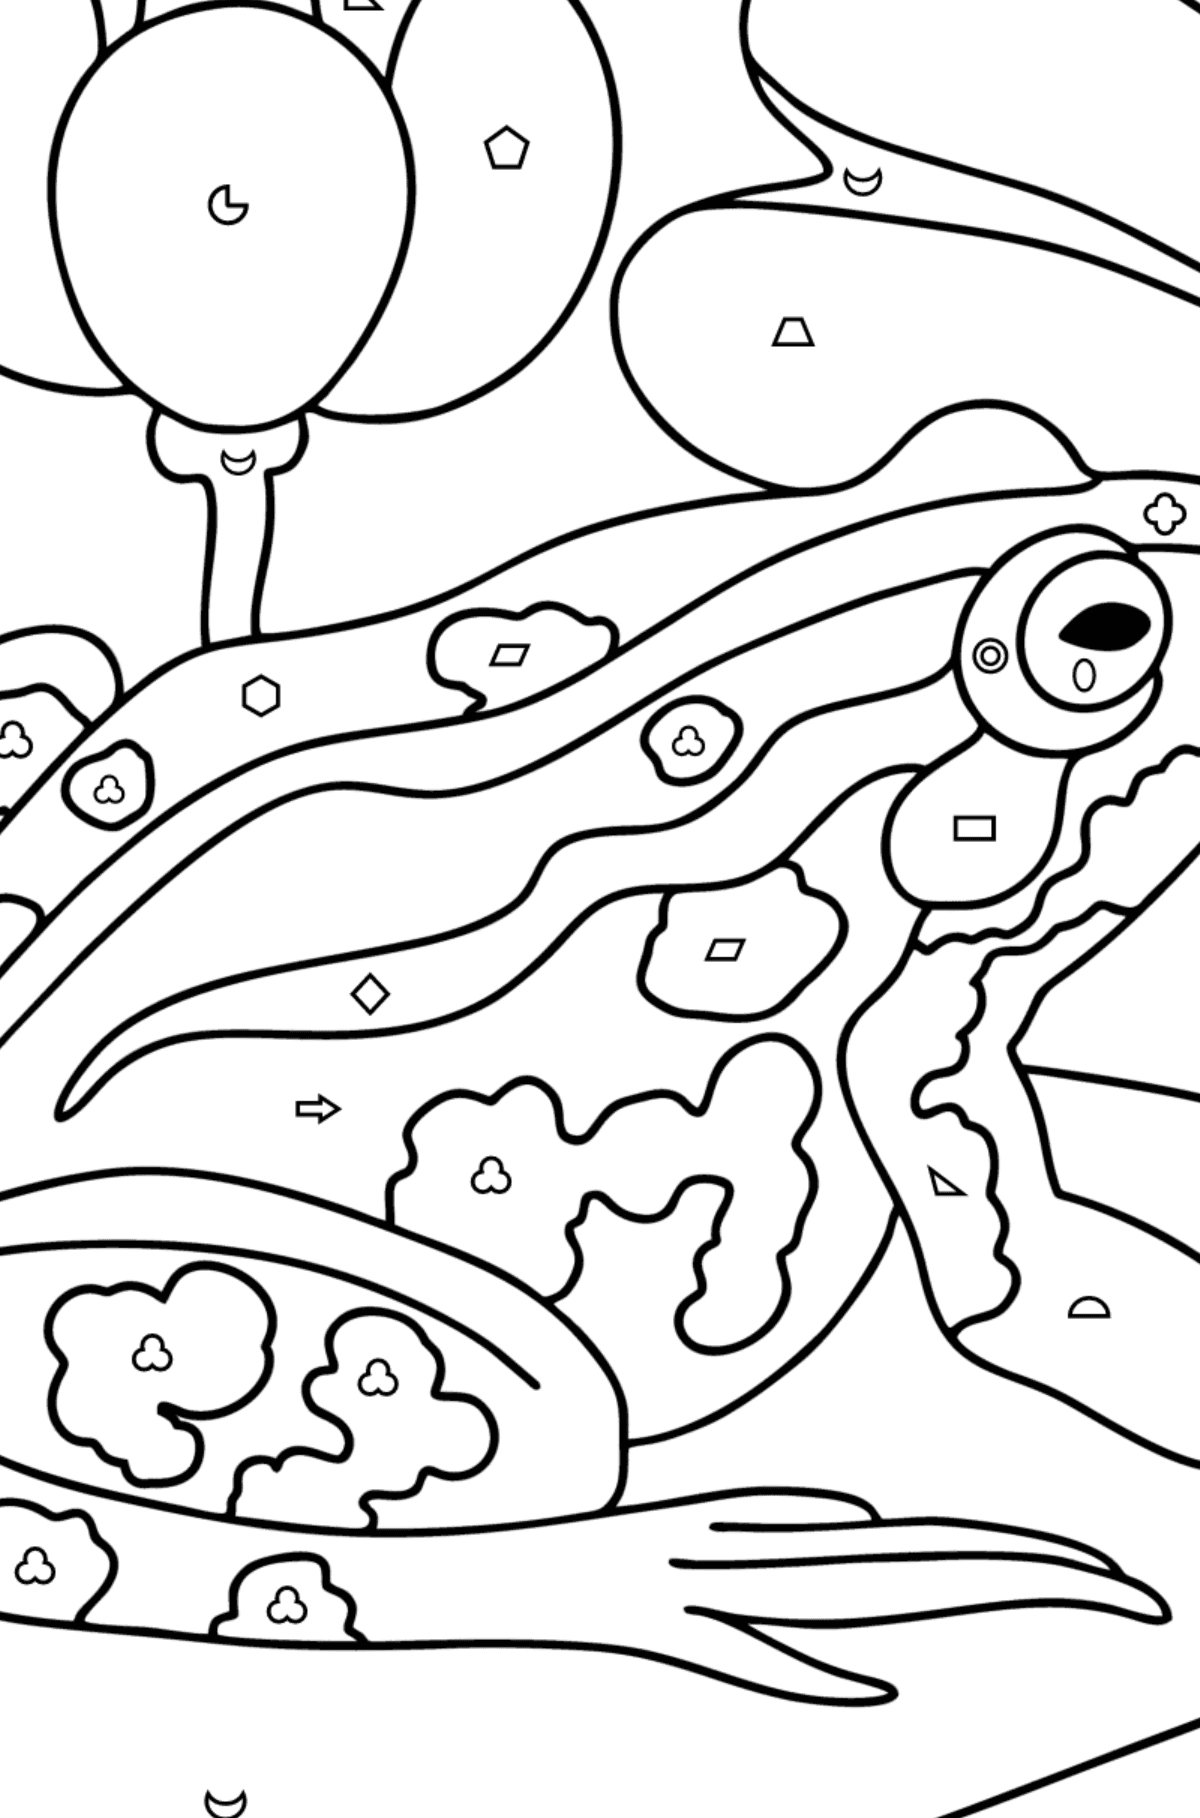 Раскраска Лягушка на озере - Картинка высокого качества для Детей